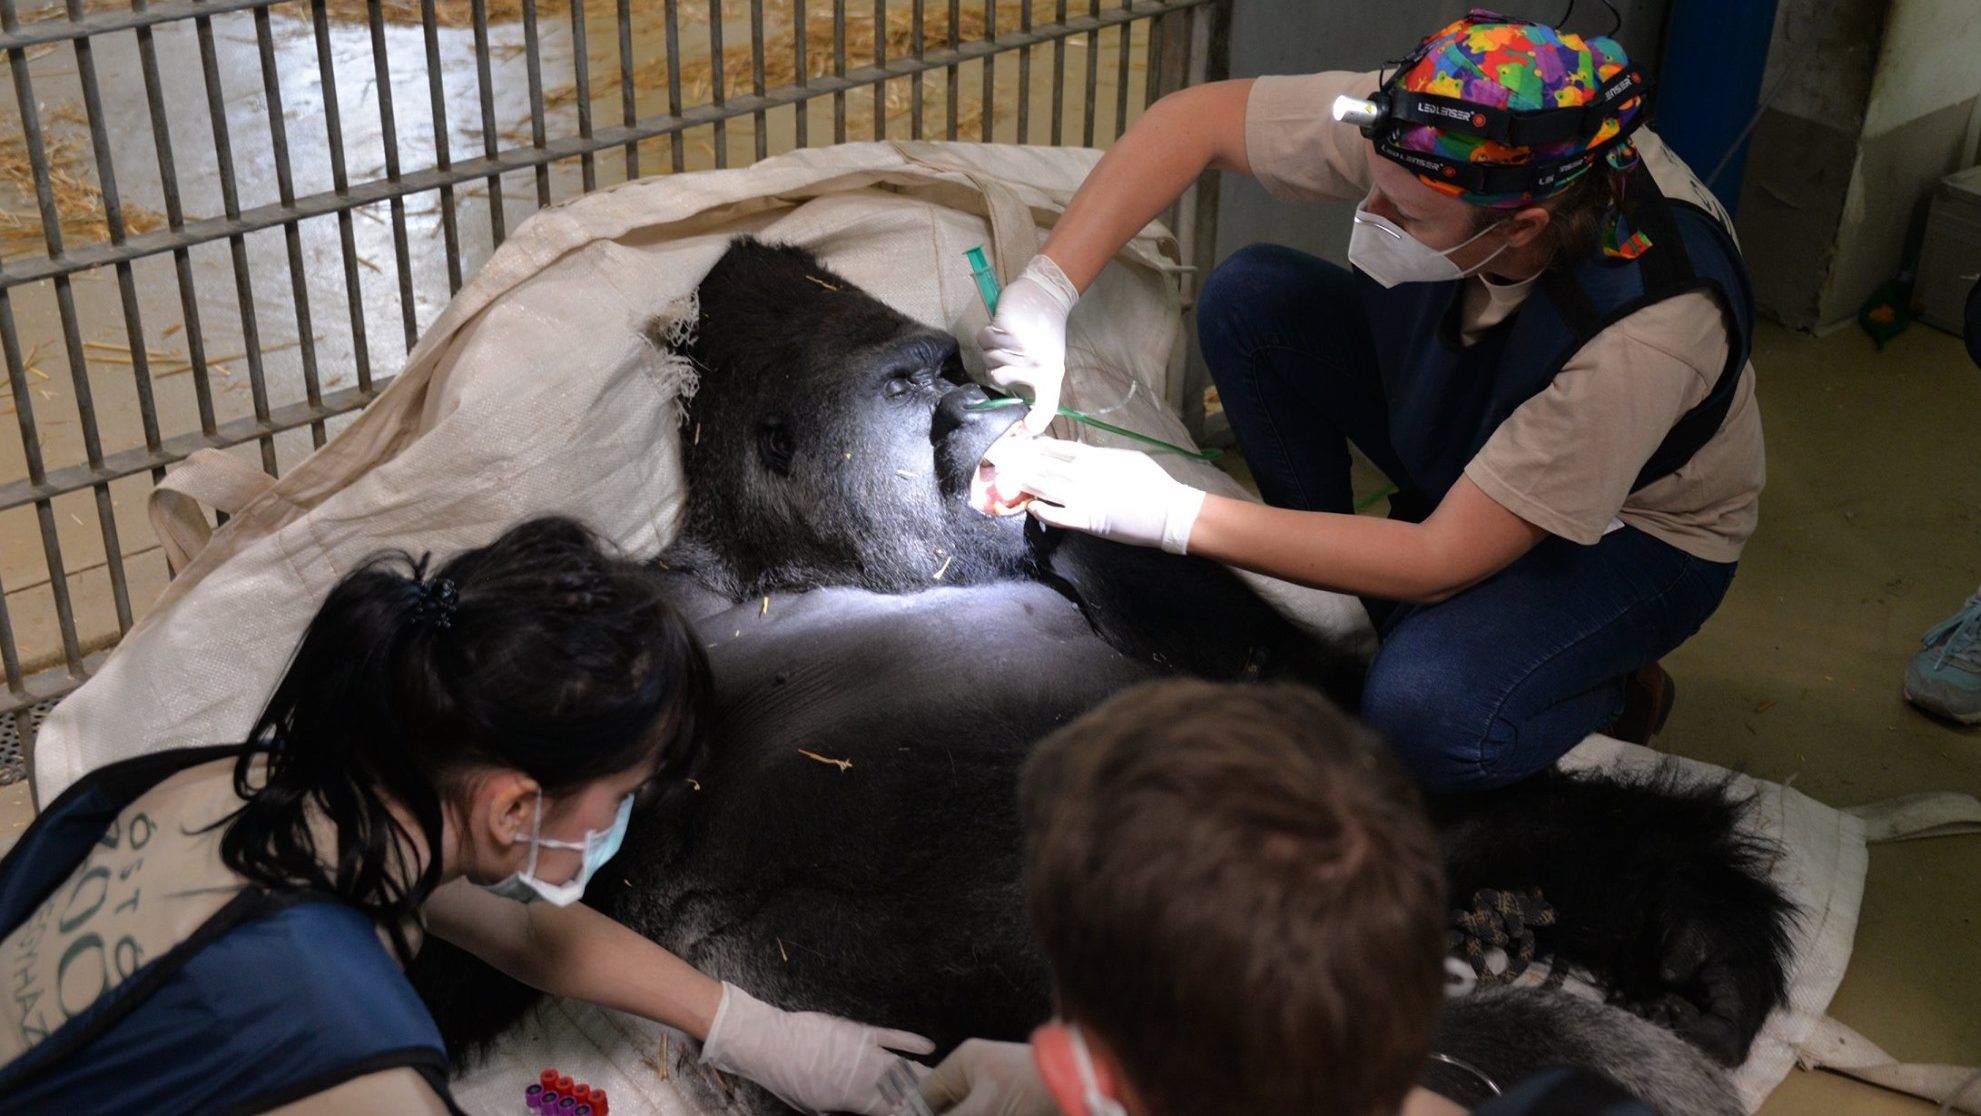 Életmentő műtétet hajtottak végre nyíregyházi állatkert gorilláján